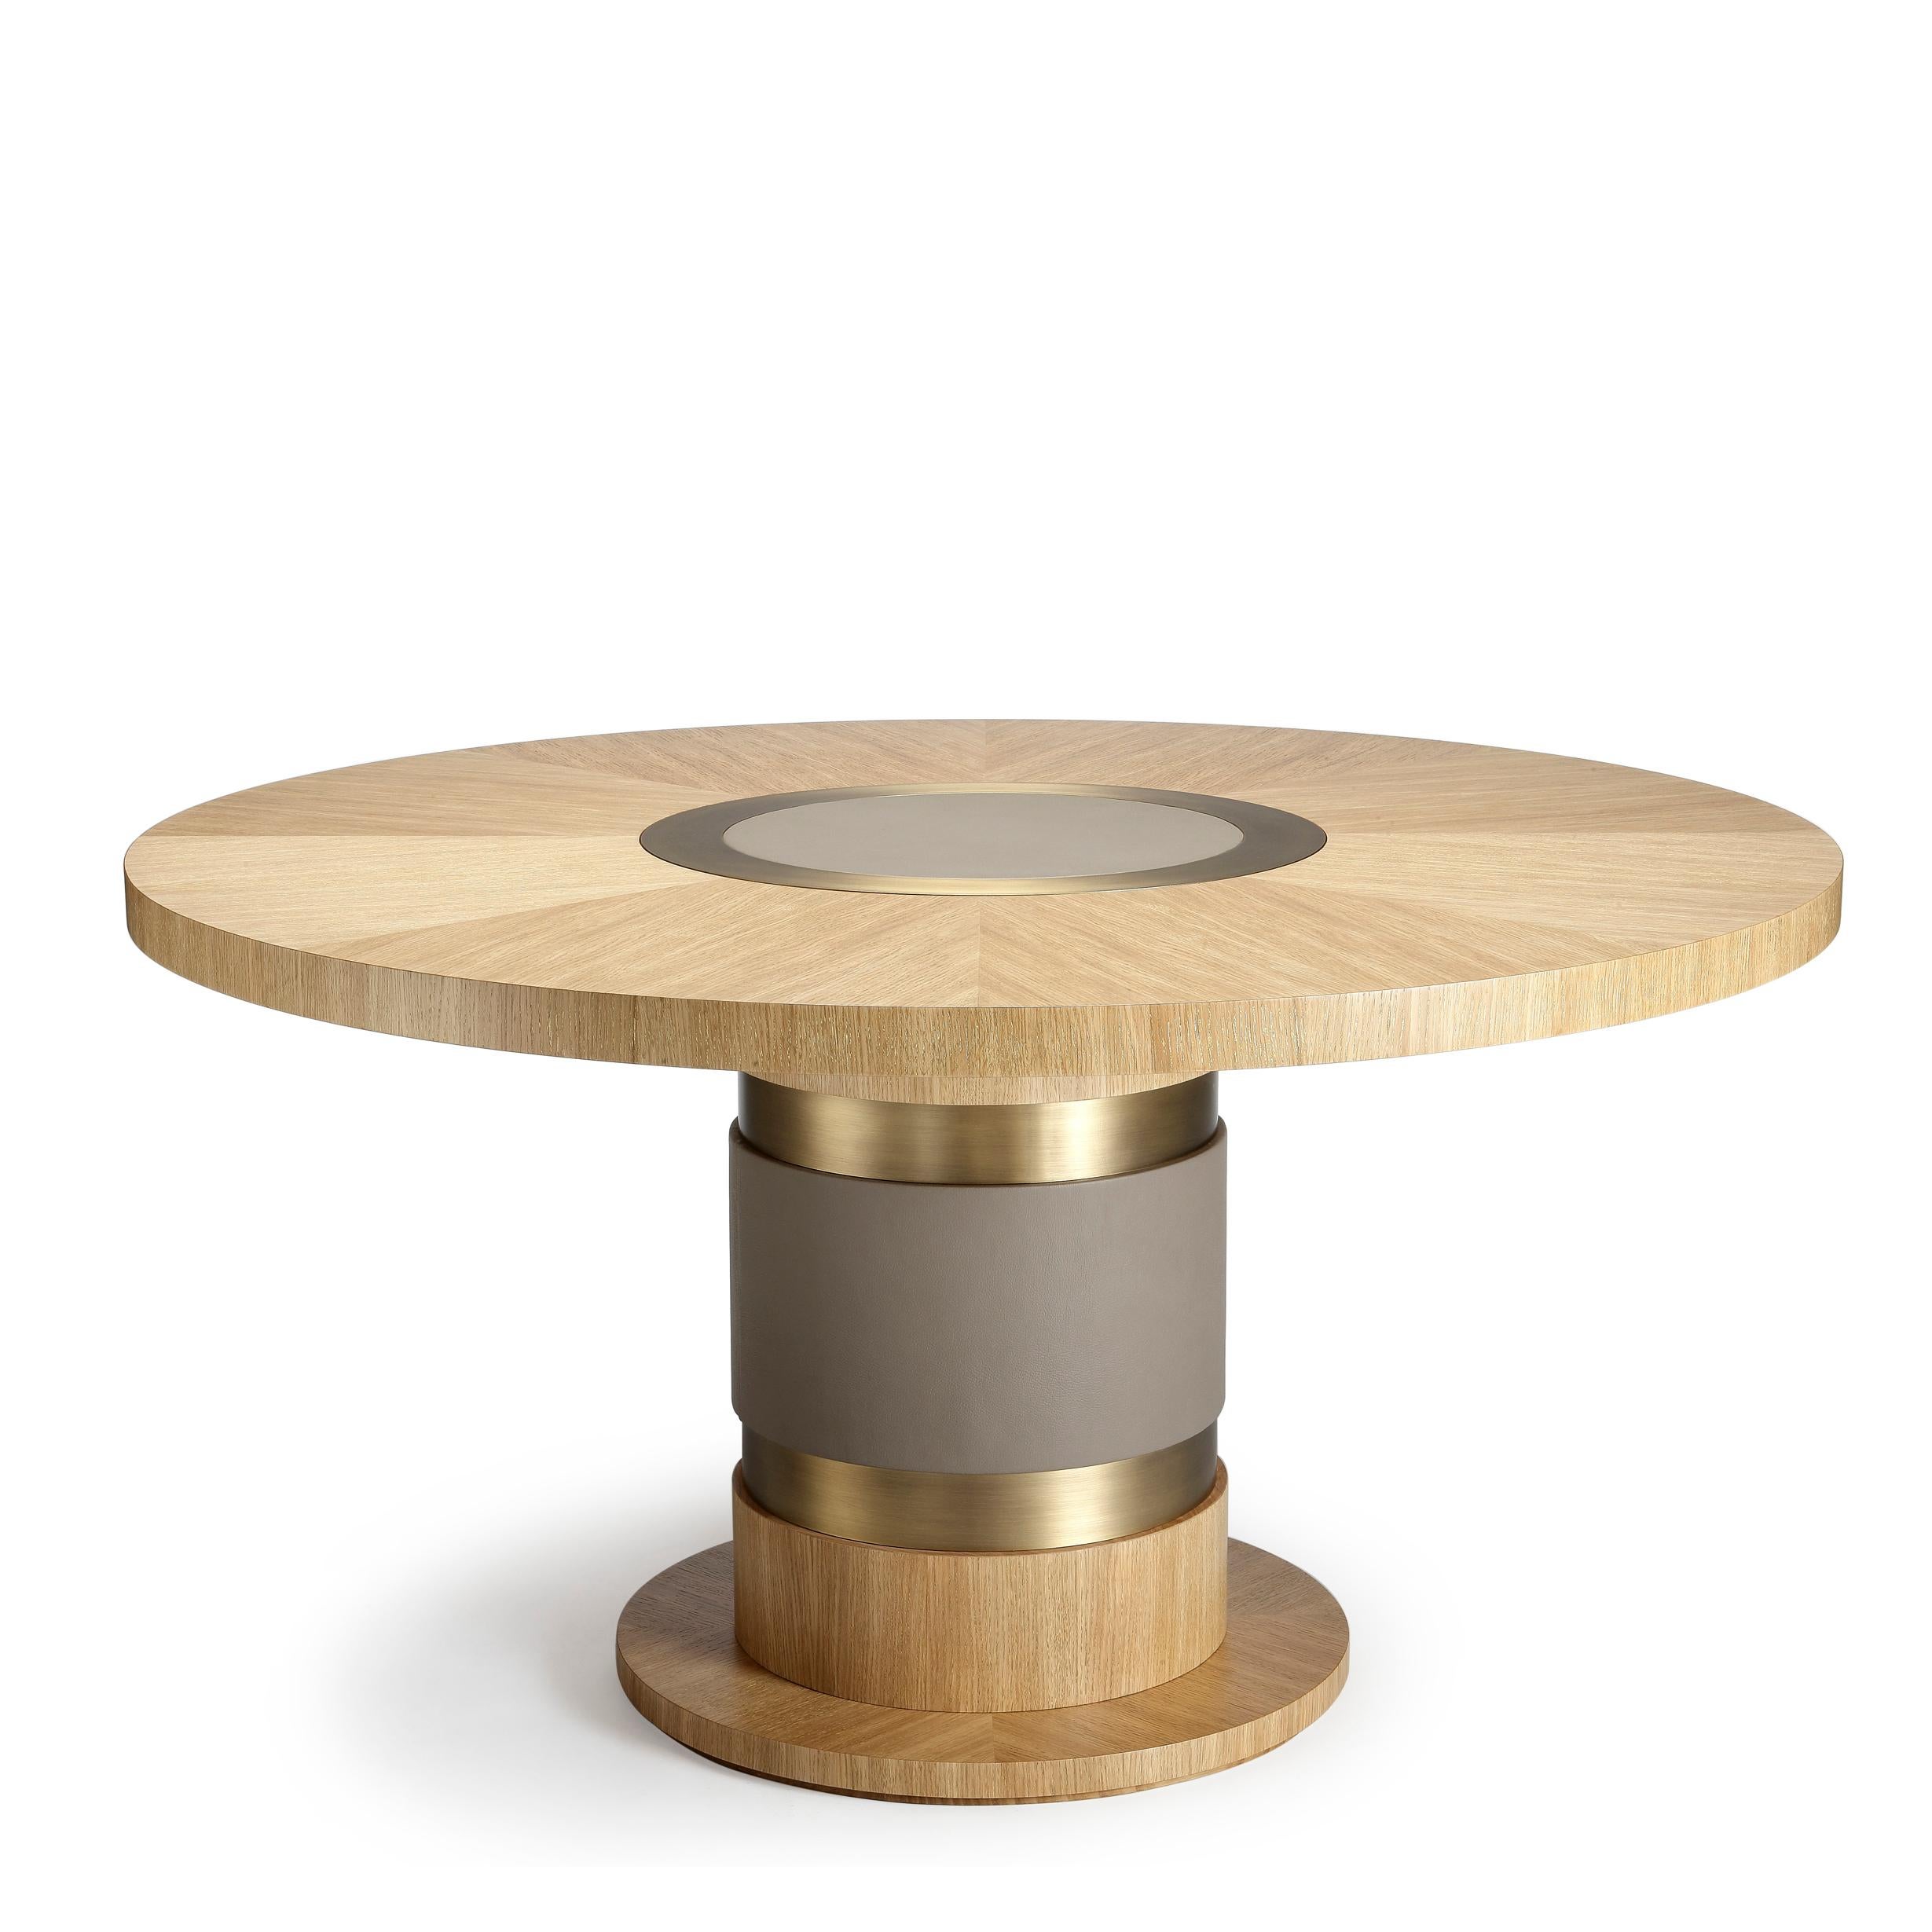 Lune-Tisch, aus goldgefächerter Eiche, Bronze und Lederdetails, handgefertigt von Duistt

Der Tisch Lune ist ein perfektes Beispiel dafür, wie gut gemischte Materialien zusammenwirken können, um ein wirklich einzigartiges Stück zu schaffen. Die